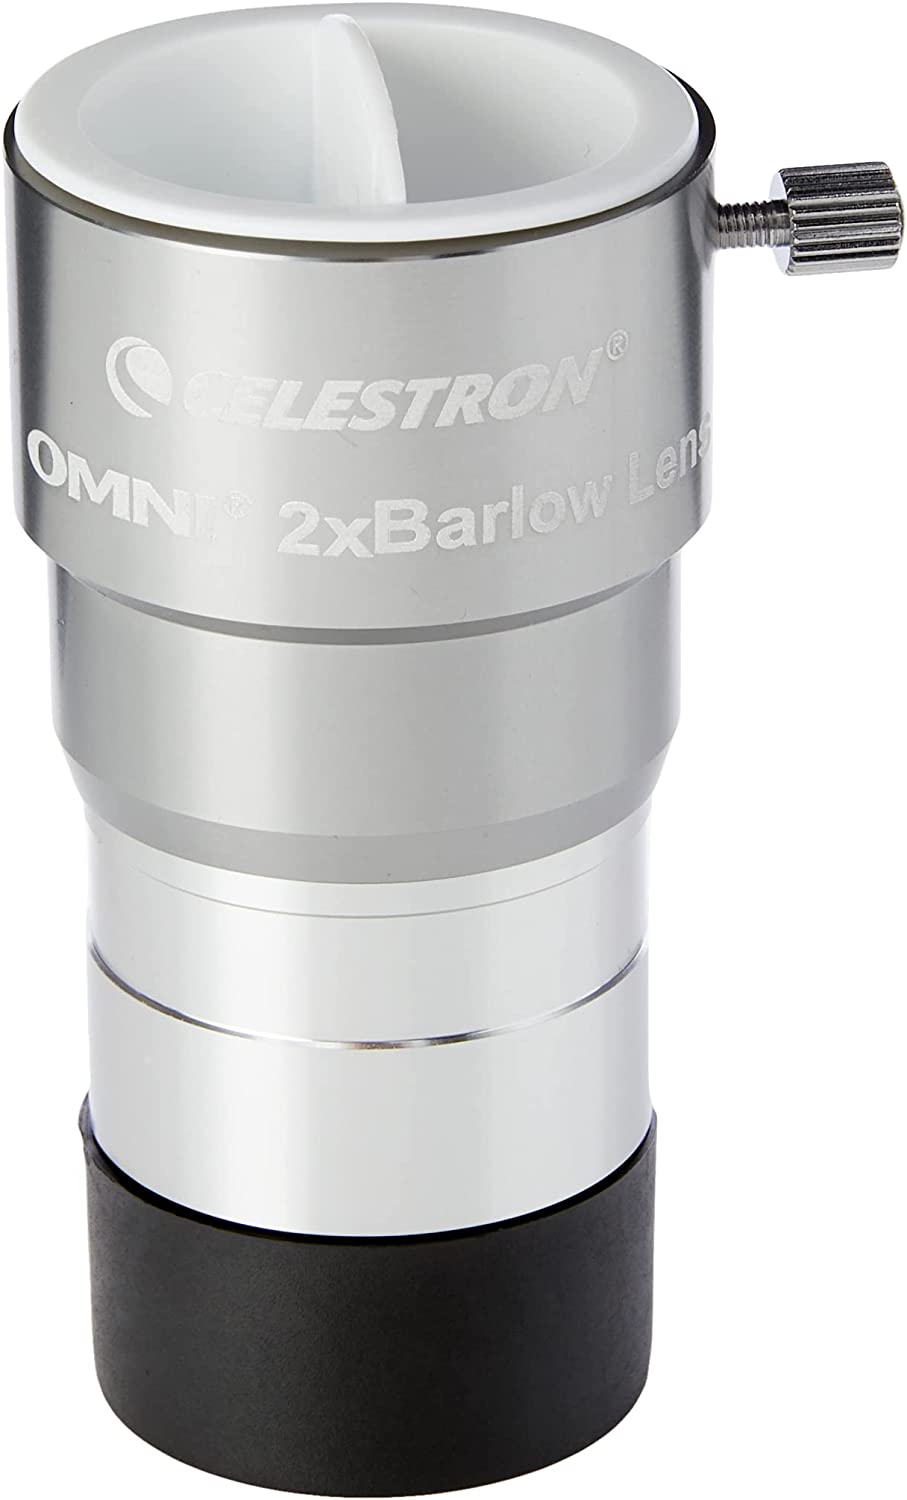 Kit de adaptador universal de 3 ejes para smartphone más Lente Omni 2X Barlow, incluye Adaptador + Lente Celestron